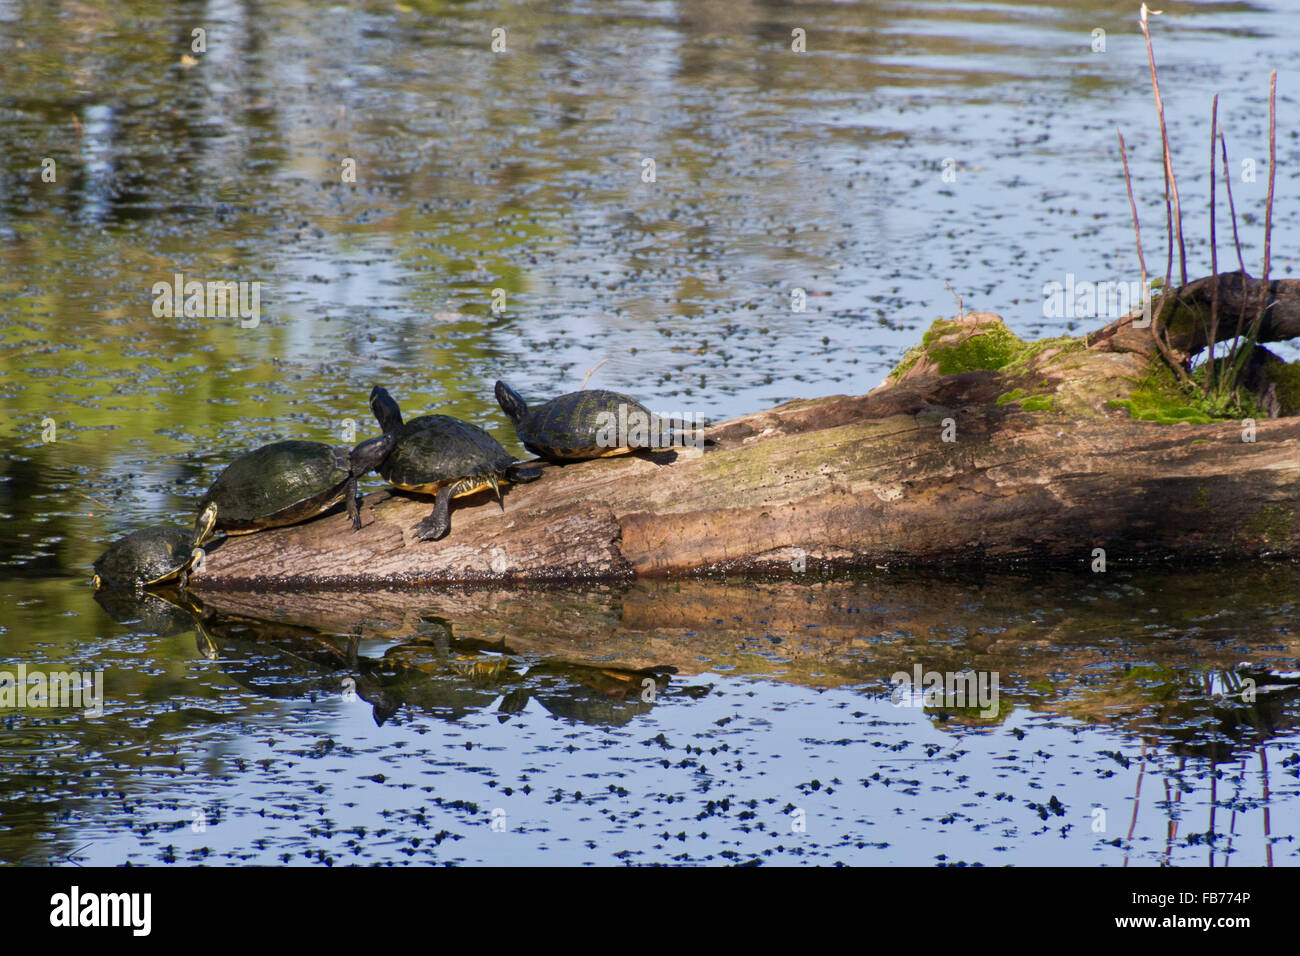 Drei Schildkröten ruhen auf einem reflektierenden Teich Baumstamm, während die vierte sich aus dem Wasser zieht, sich ihnen anzuschließen Stockfoto